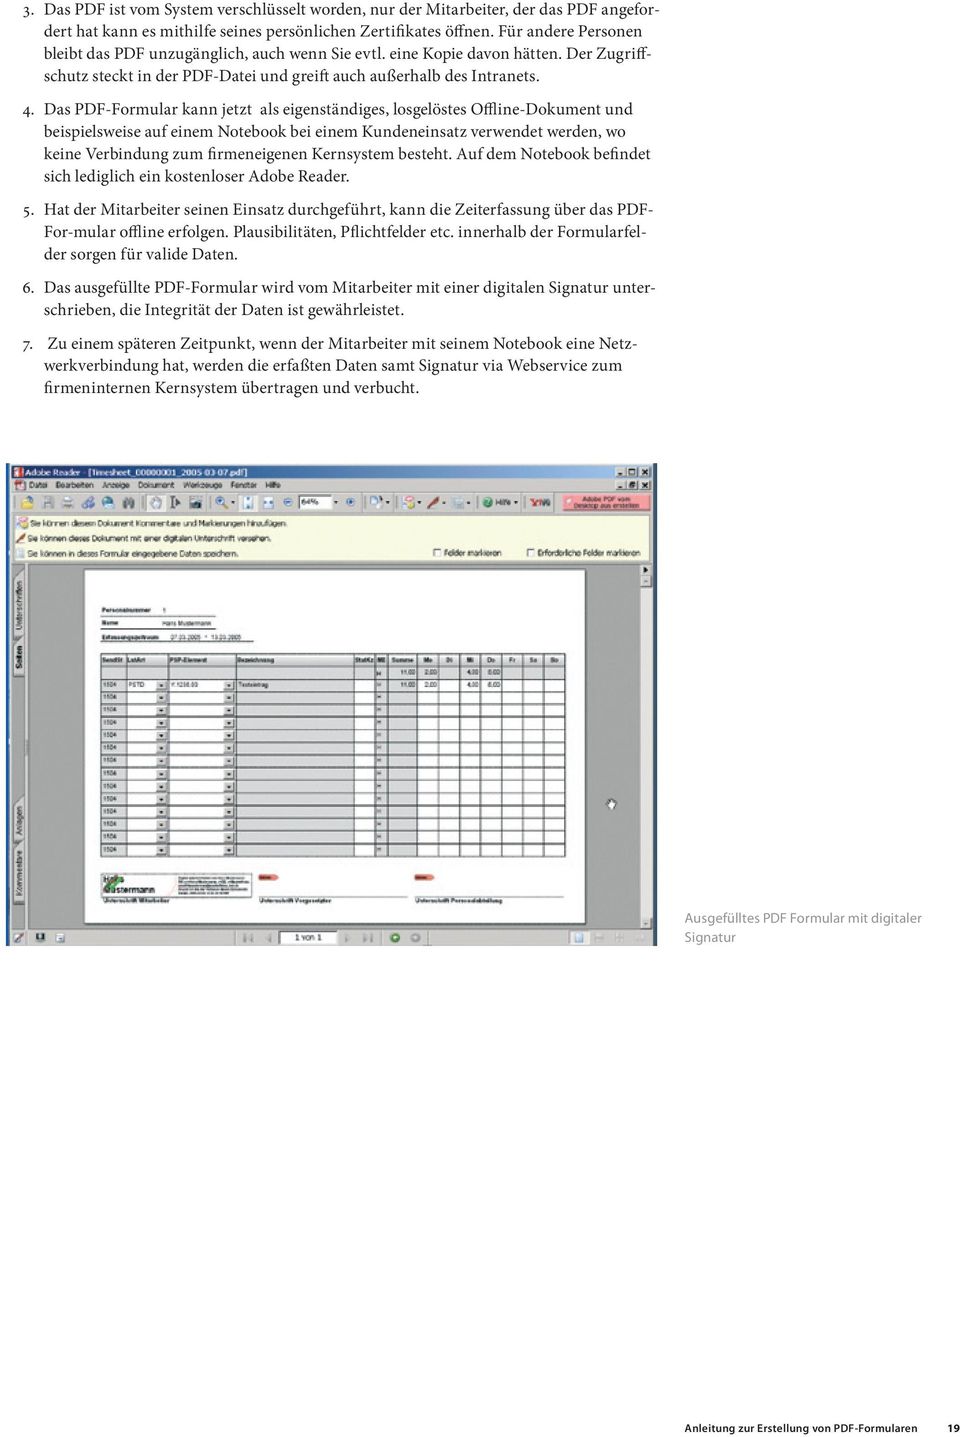 Das PDF-Formular kann jetzt als eigenständiges, losgelöstes Offline-Dokument und beispielsweise auf einem Notebook bei einem Kundeneinsatz verwendet werden, wo keine Verbindung zum firmeneigenen